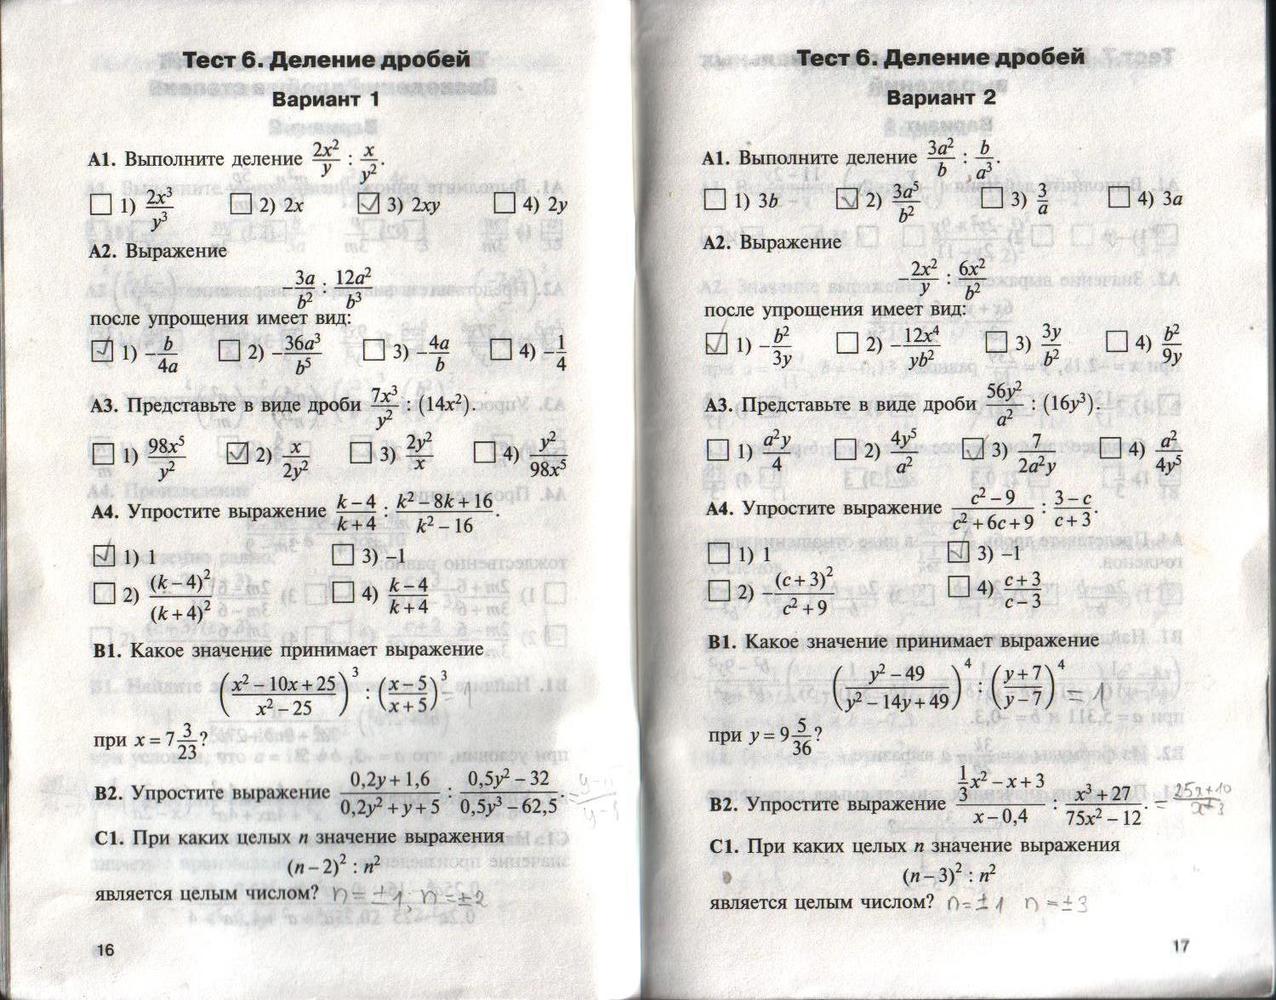 Б 1 19 тестирование. Контрольные работы по алгебре 8 класс а1 а2 б1 б2. Контрольно измерительные материалы 10 класс Алгебра. Контрольно измерительные материалы 11 класс Алгебра.